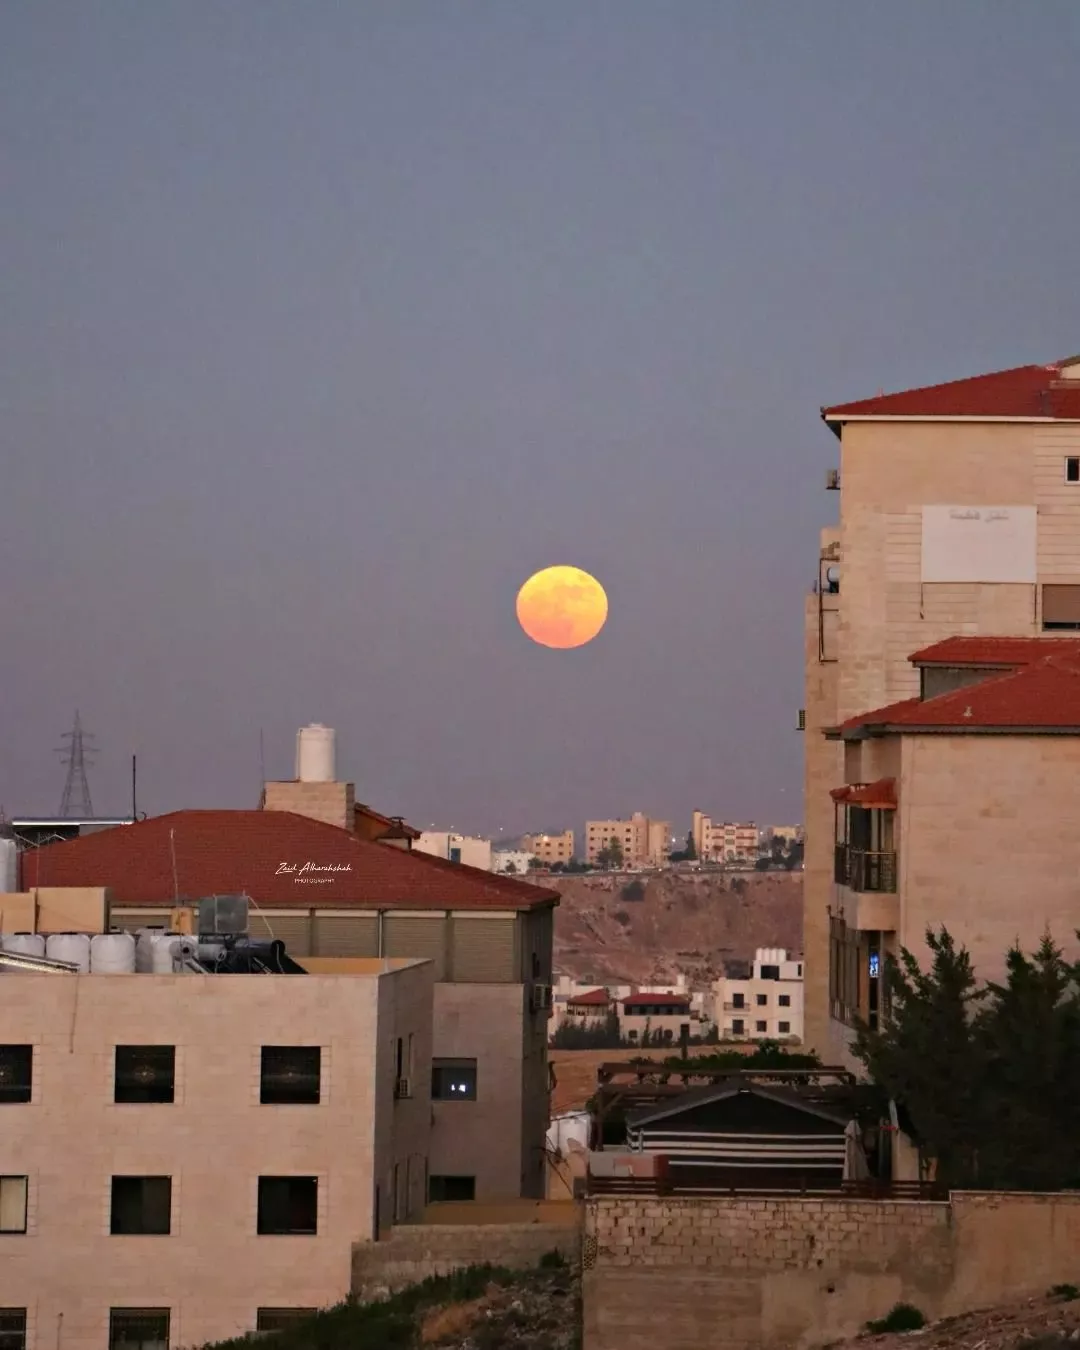 القمر العملاق ينير سماء الدول العربية والعالم... وهذه هي أجمل الصور له